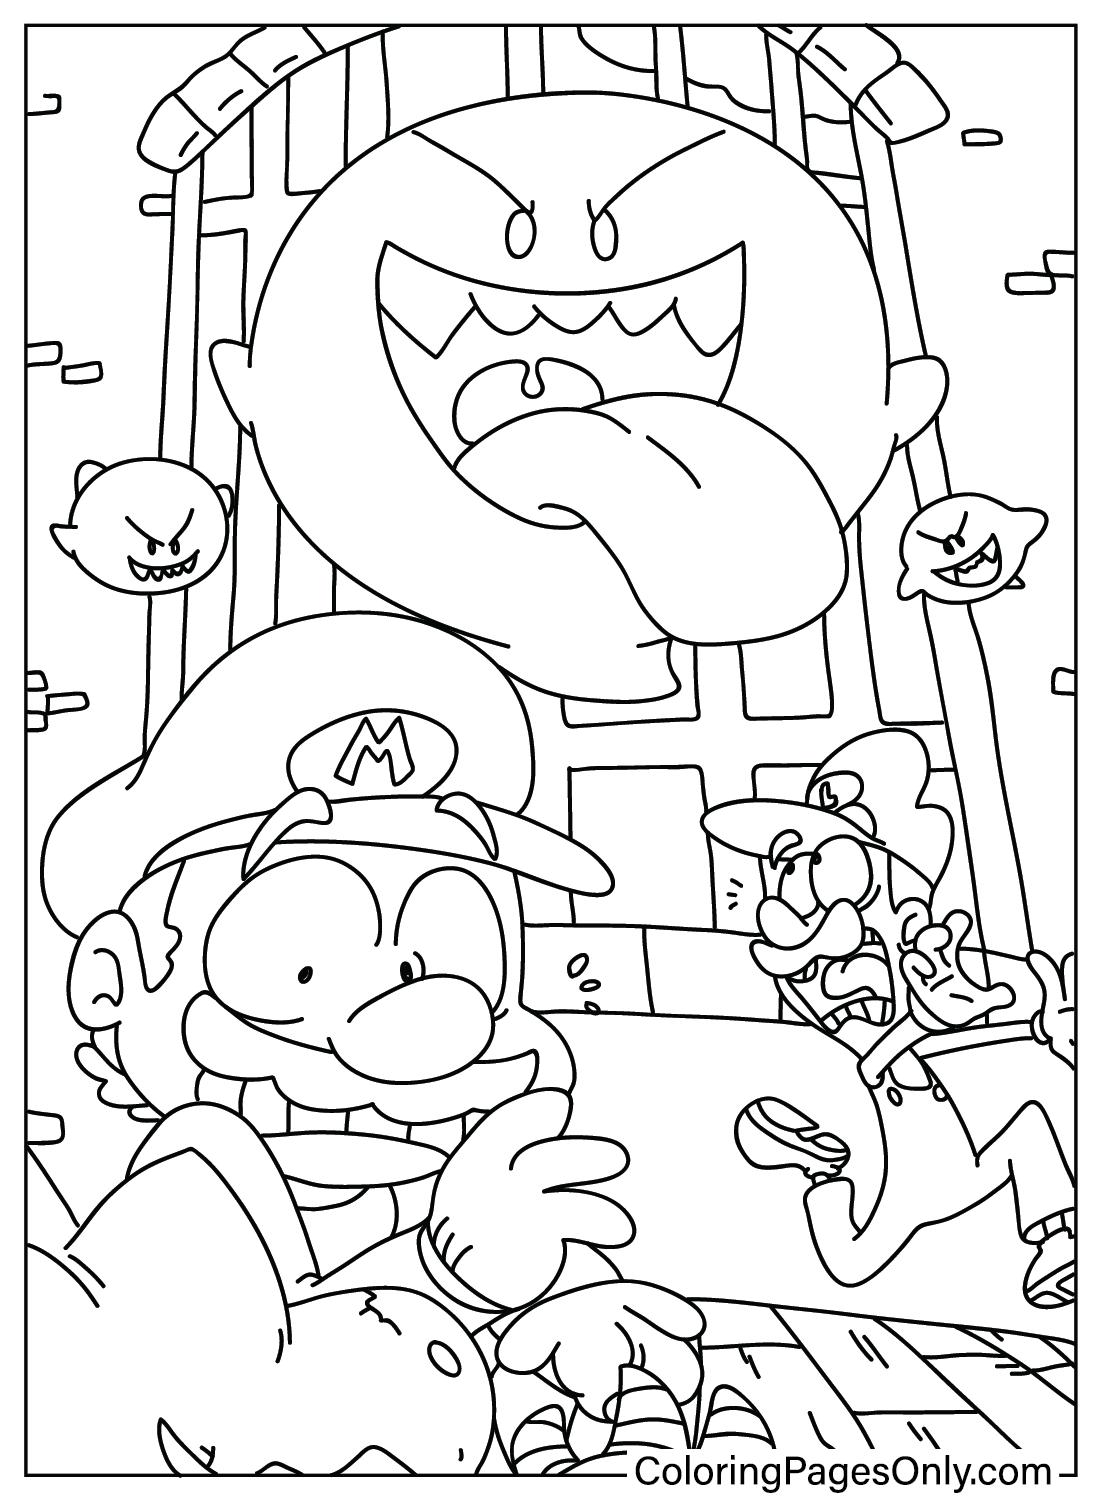 Página para colorear de Mario Halloween para imprimir de Mario Halloween